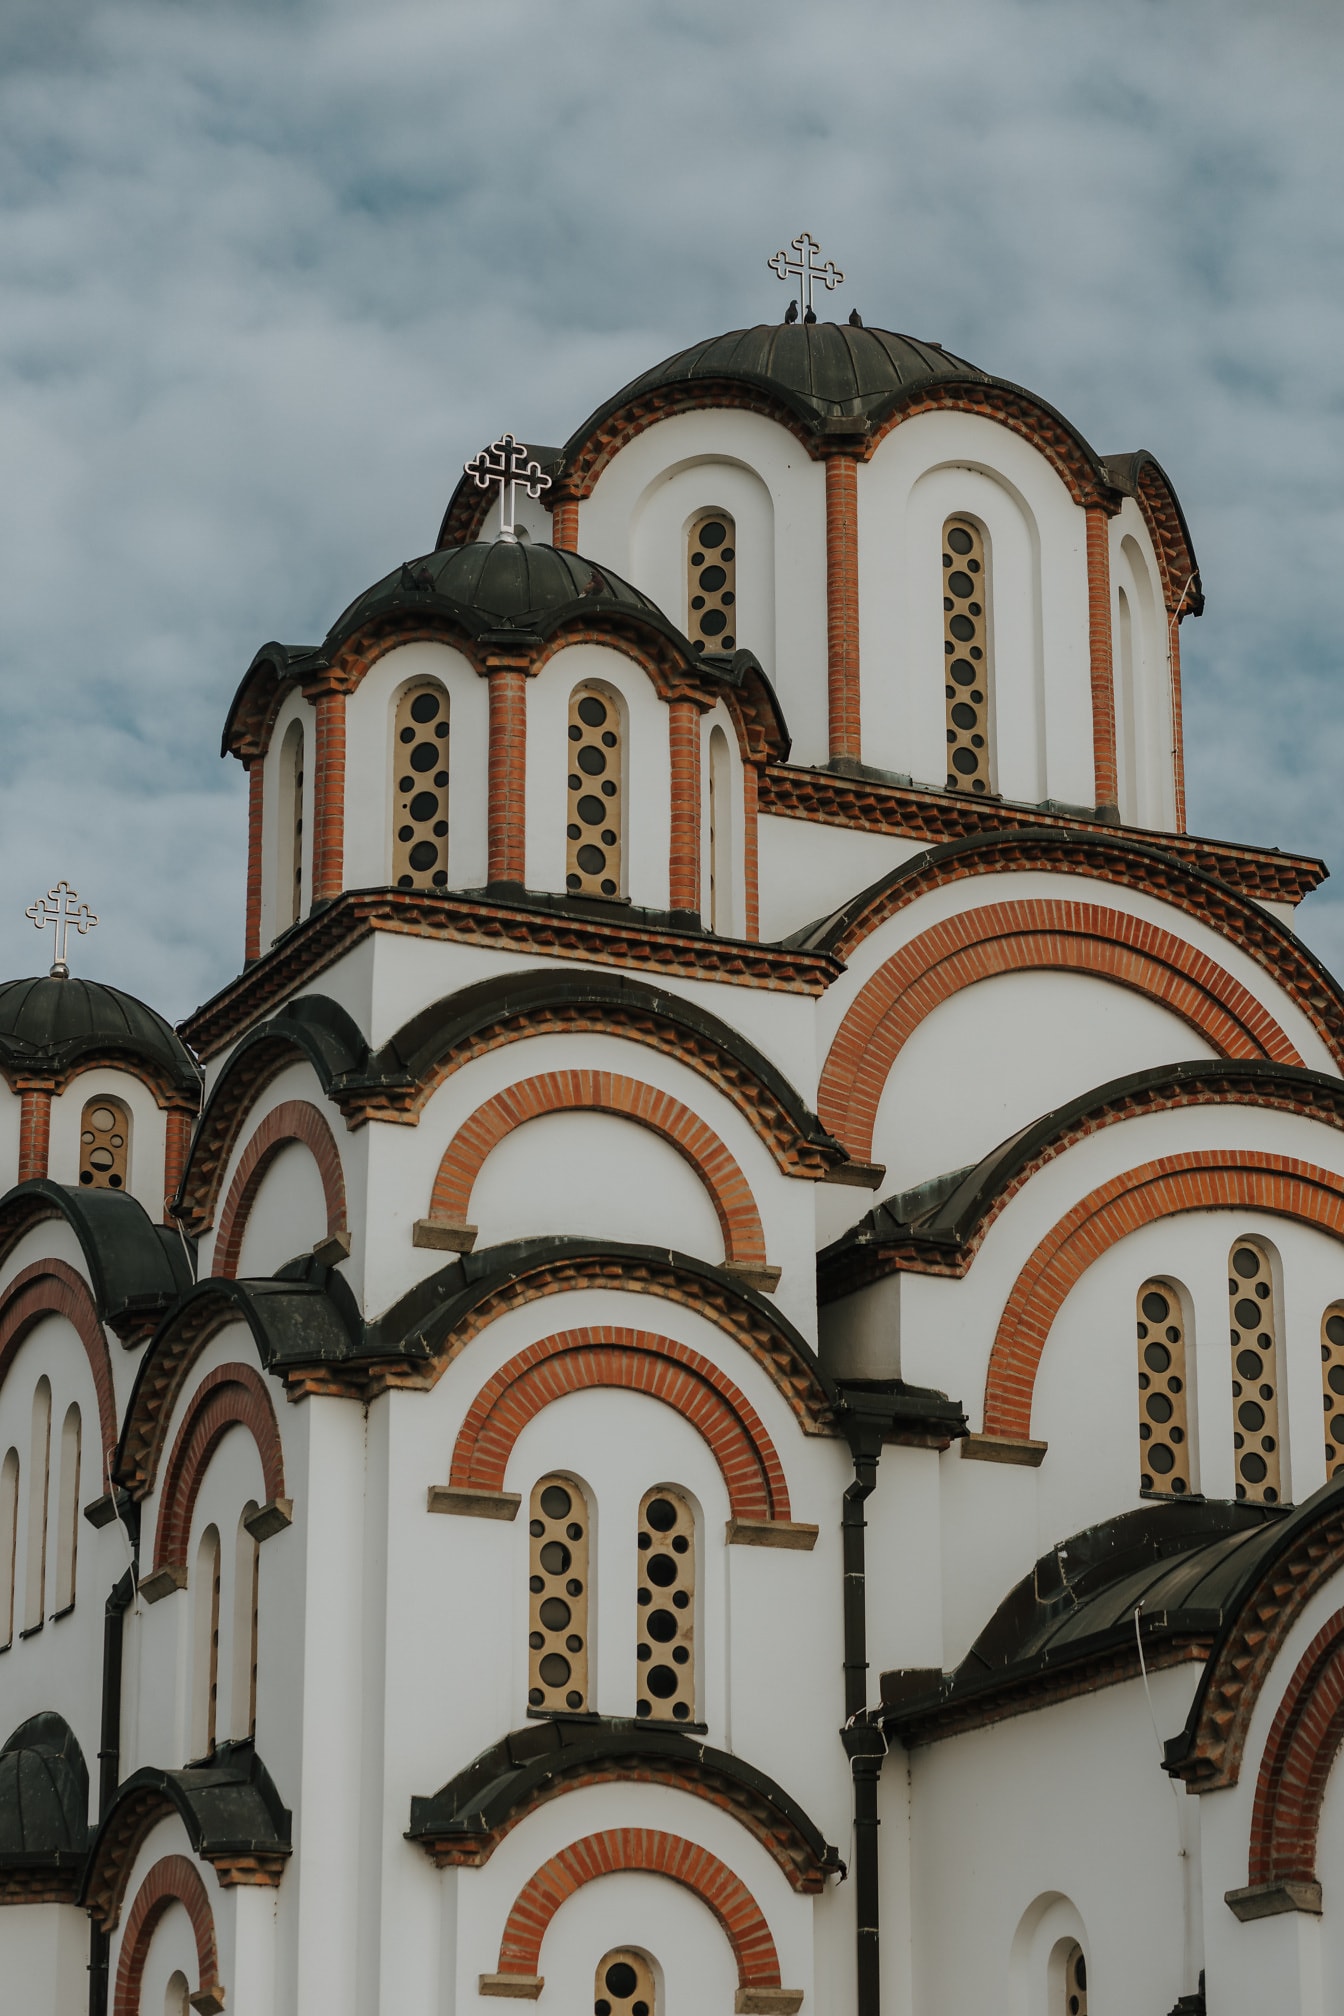 Maestosa chiesa russa ortodossa in stile architettonico bizantino medievale